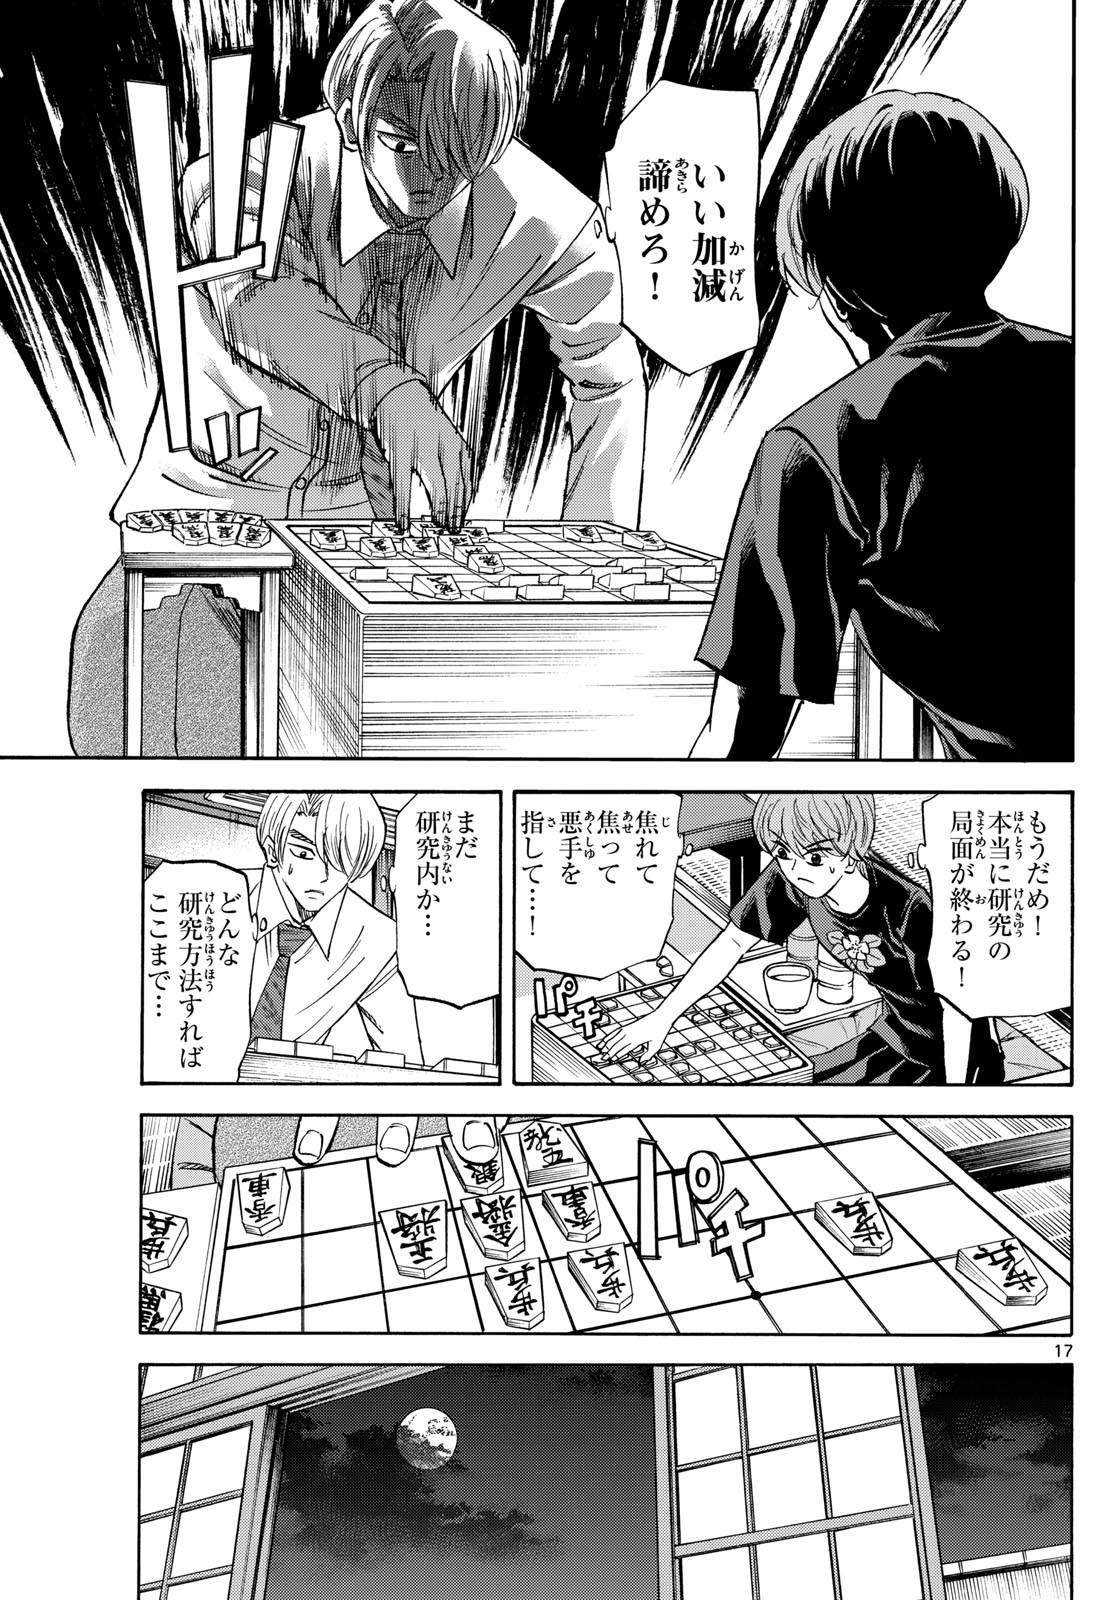 Ryu-to-Ichigo - Chapter 144 - Page 17